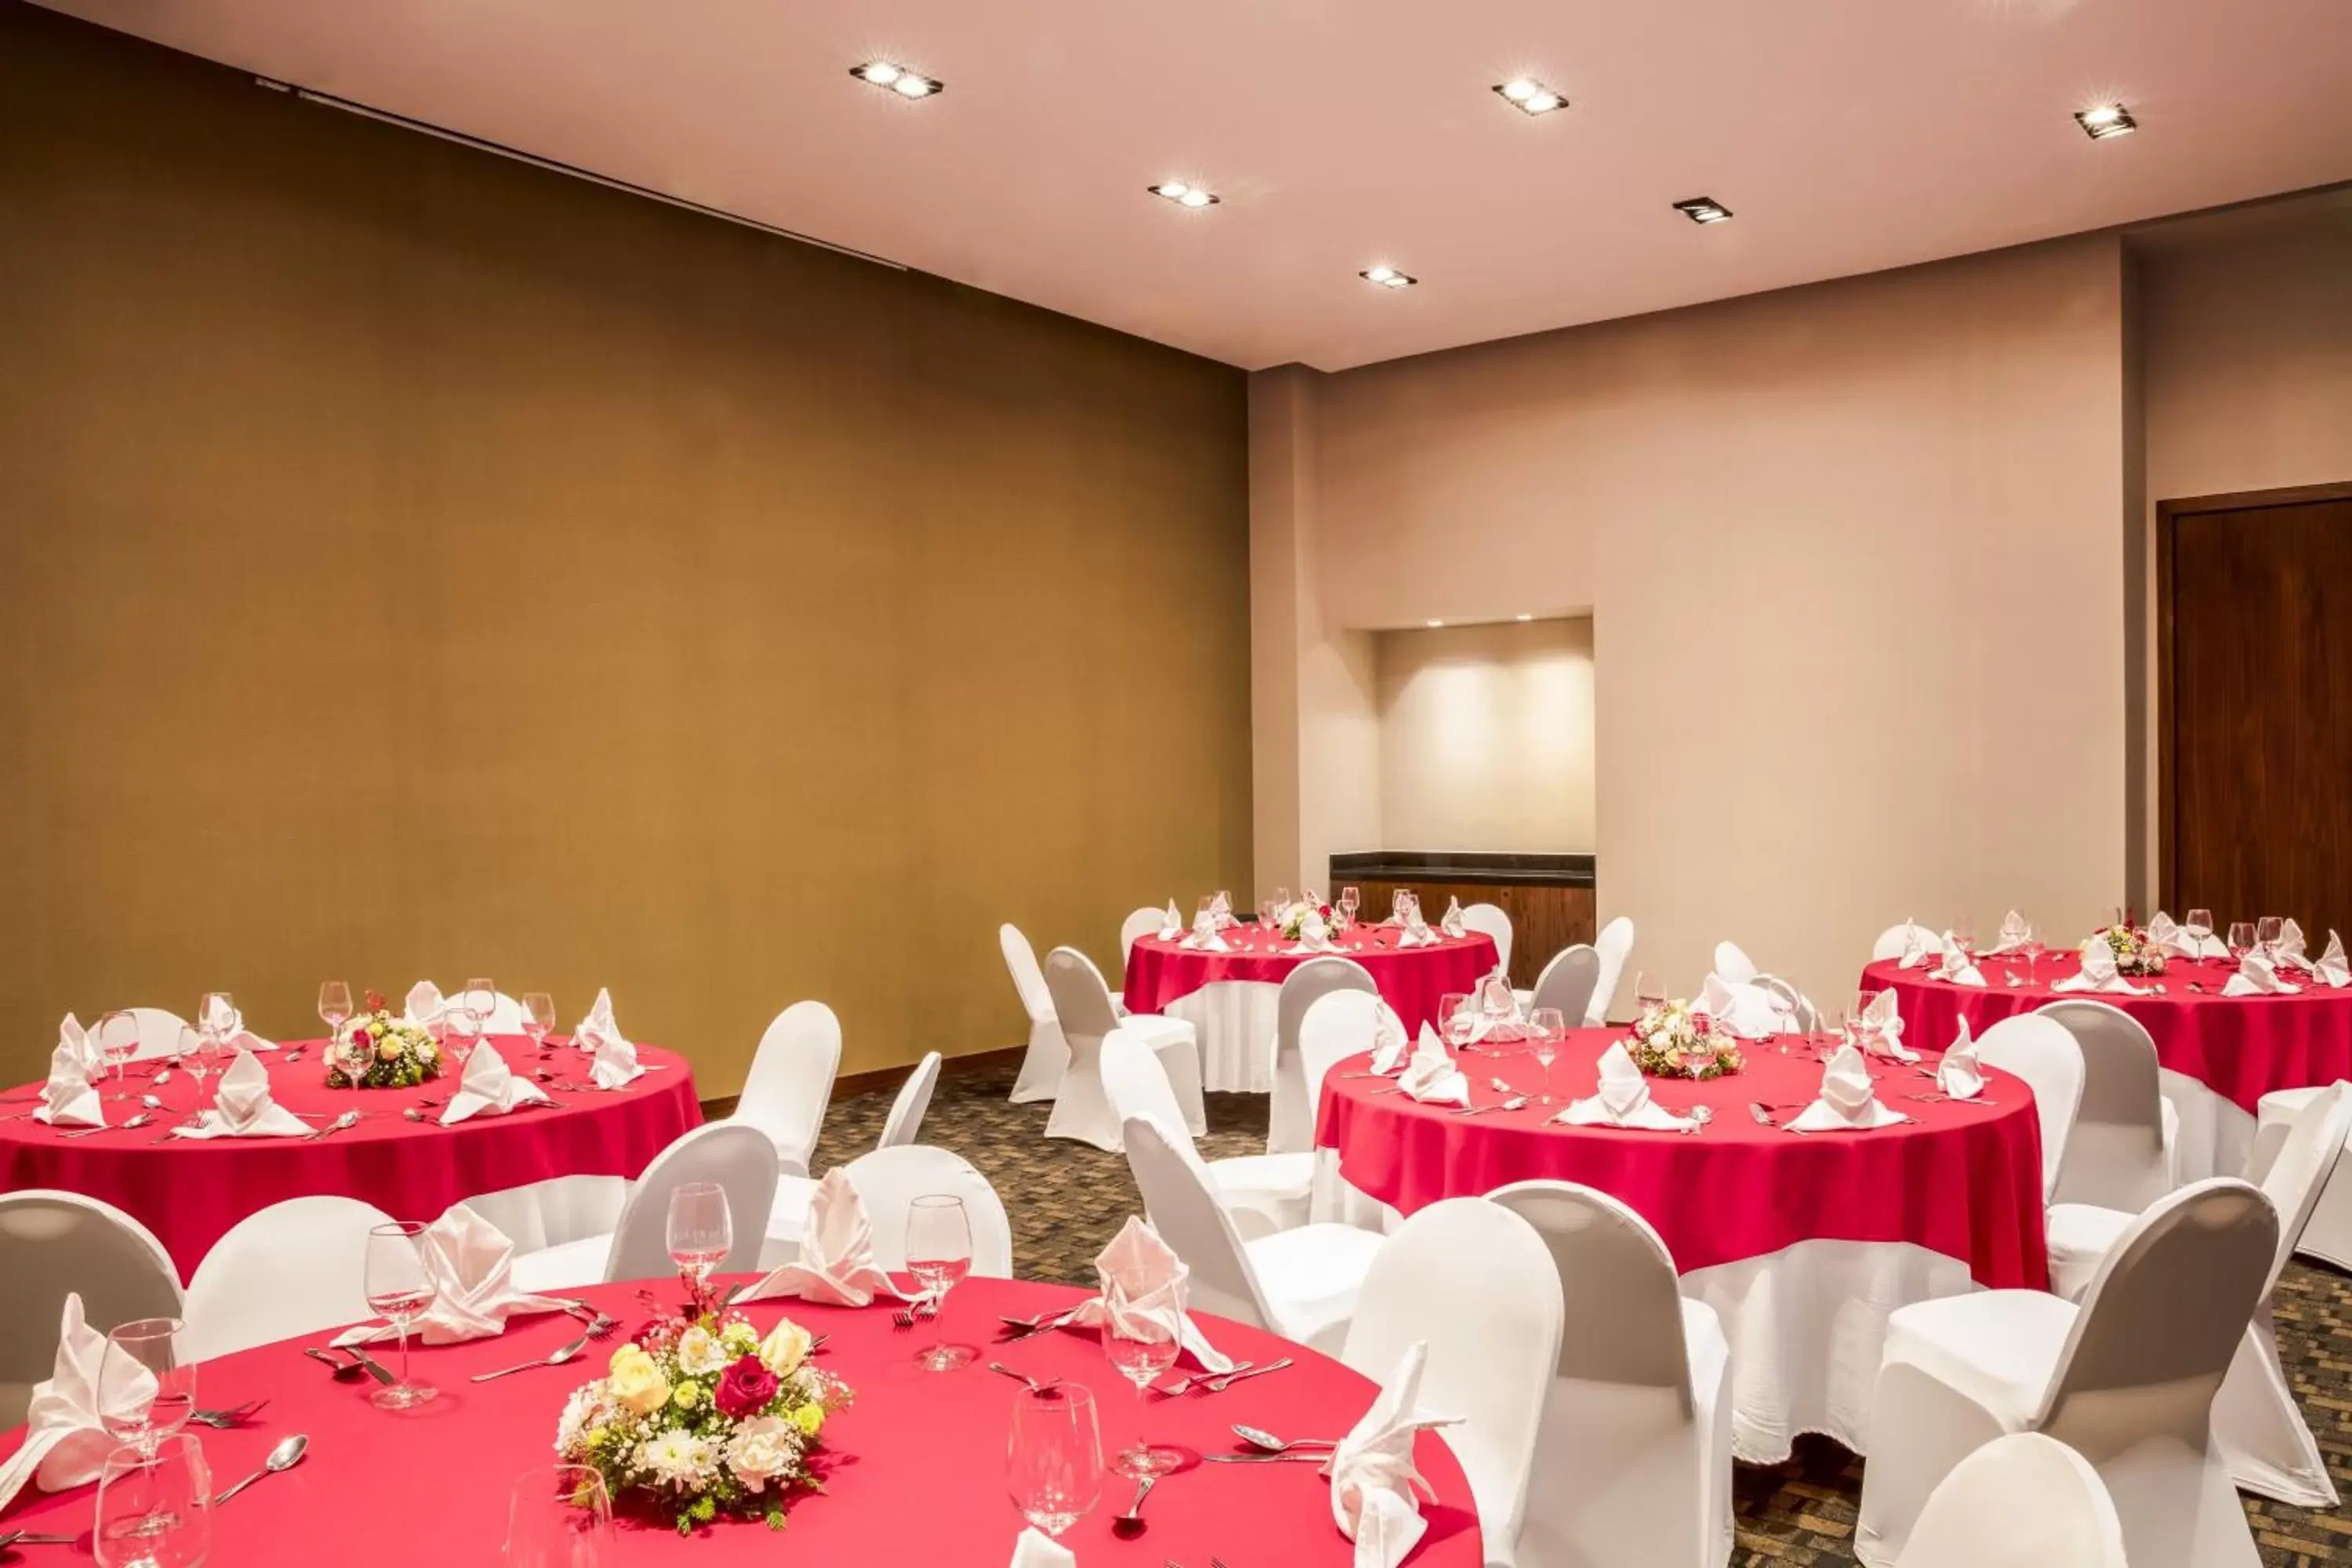 Lobby or reception, Banquet Facilities in Fiesta Inn Chihuahua Fashion Mall